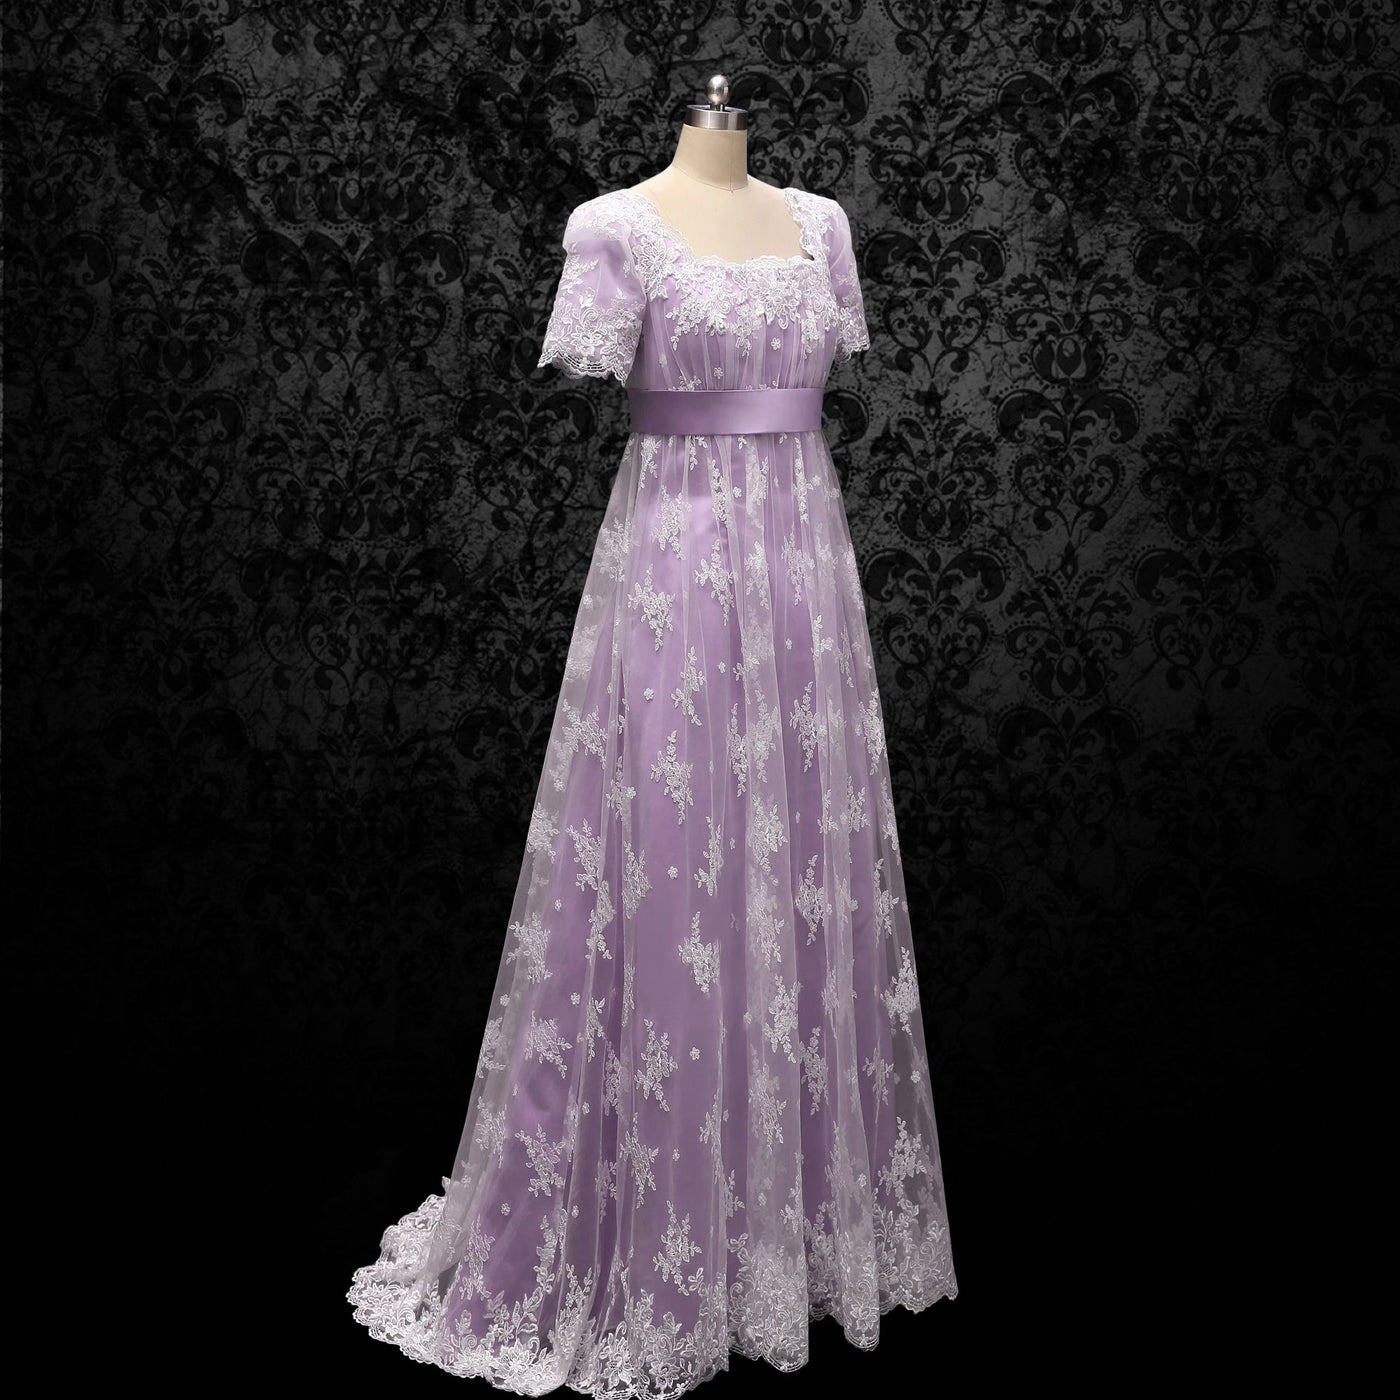 Bridgerton Lavender Regency Wedding Dress With Lace- Regency Era Purple Ball Gown Plus Size - WonderlandByLilian